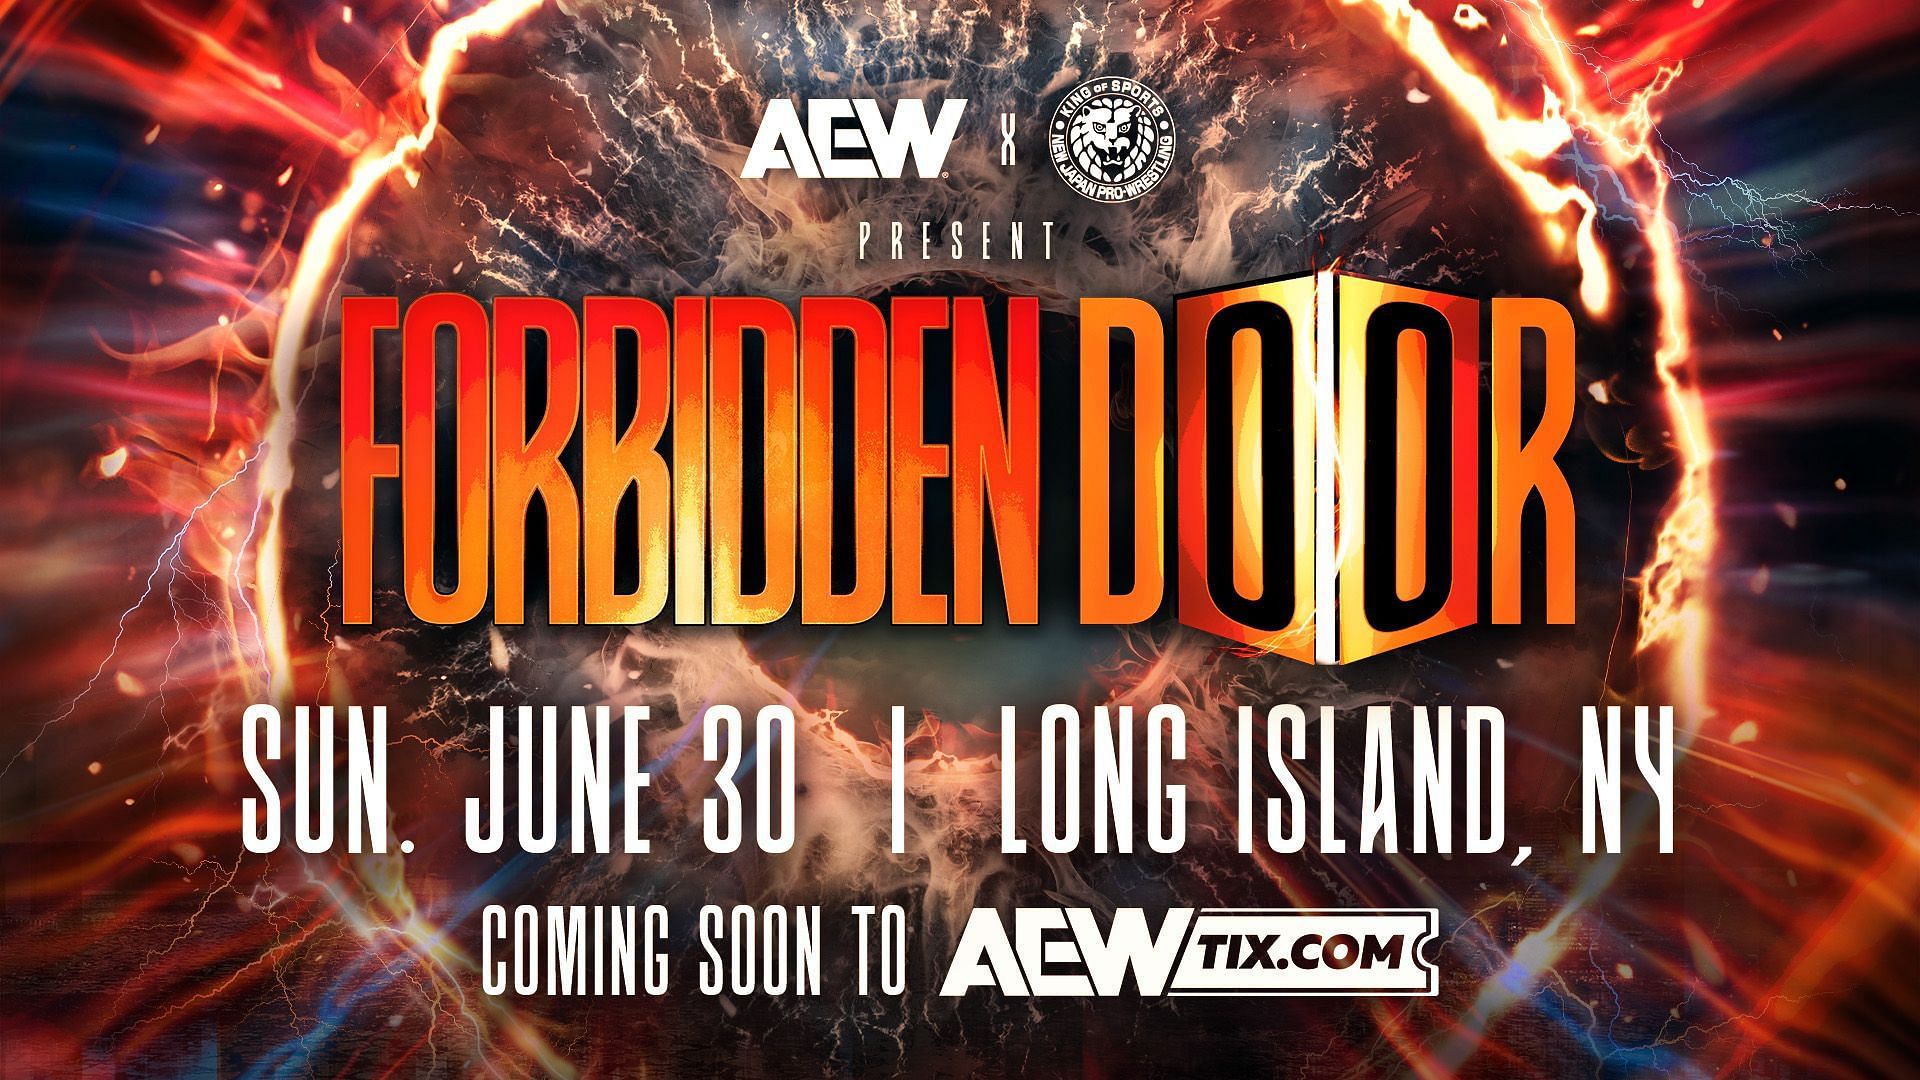 The official logo for AEW x NJPW Forbidden Door 3